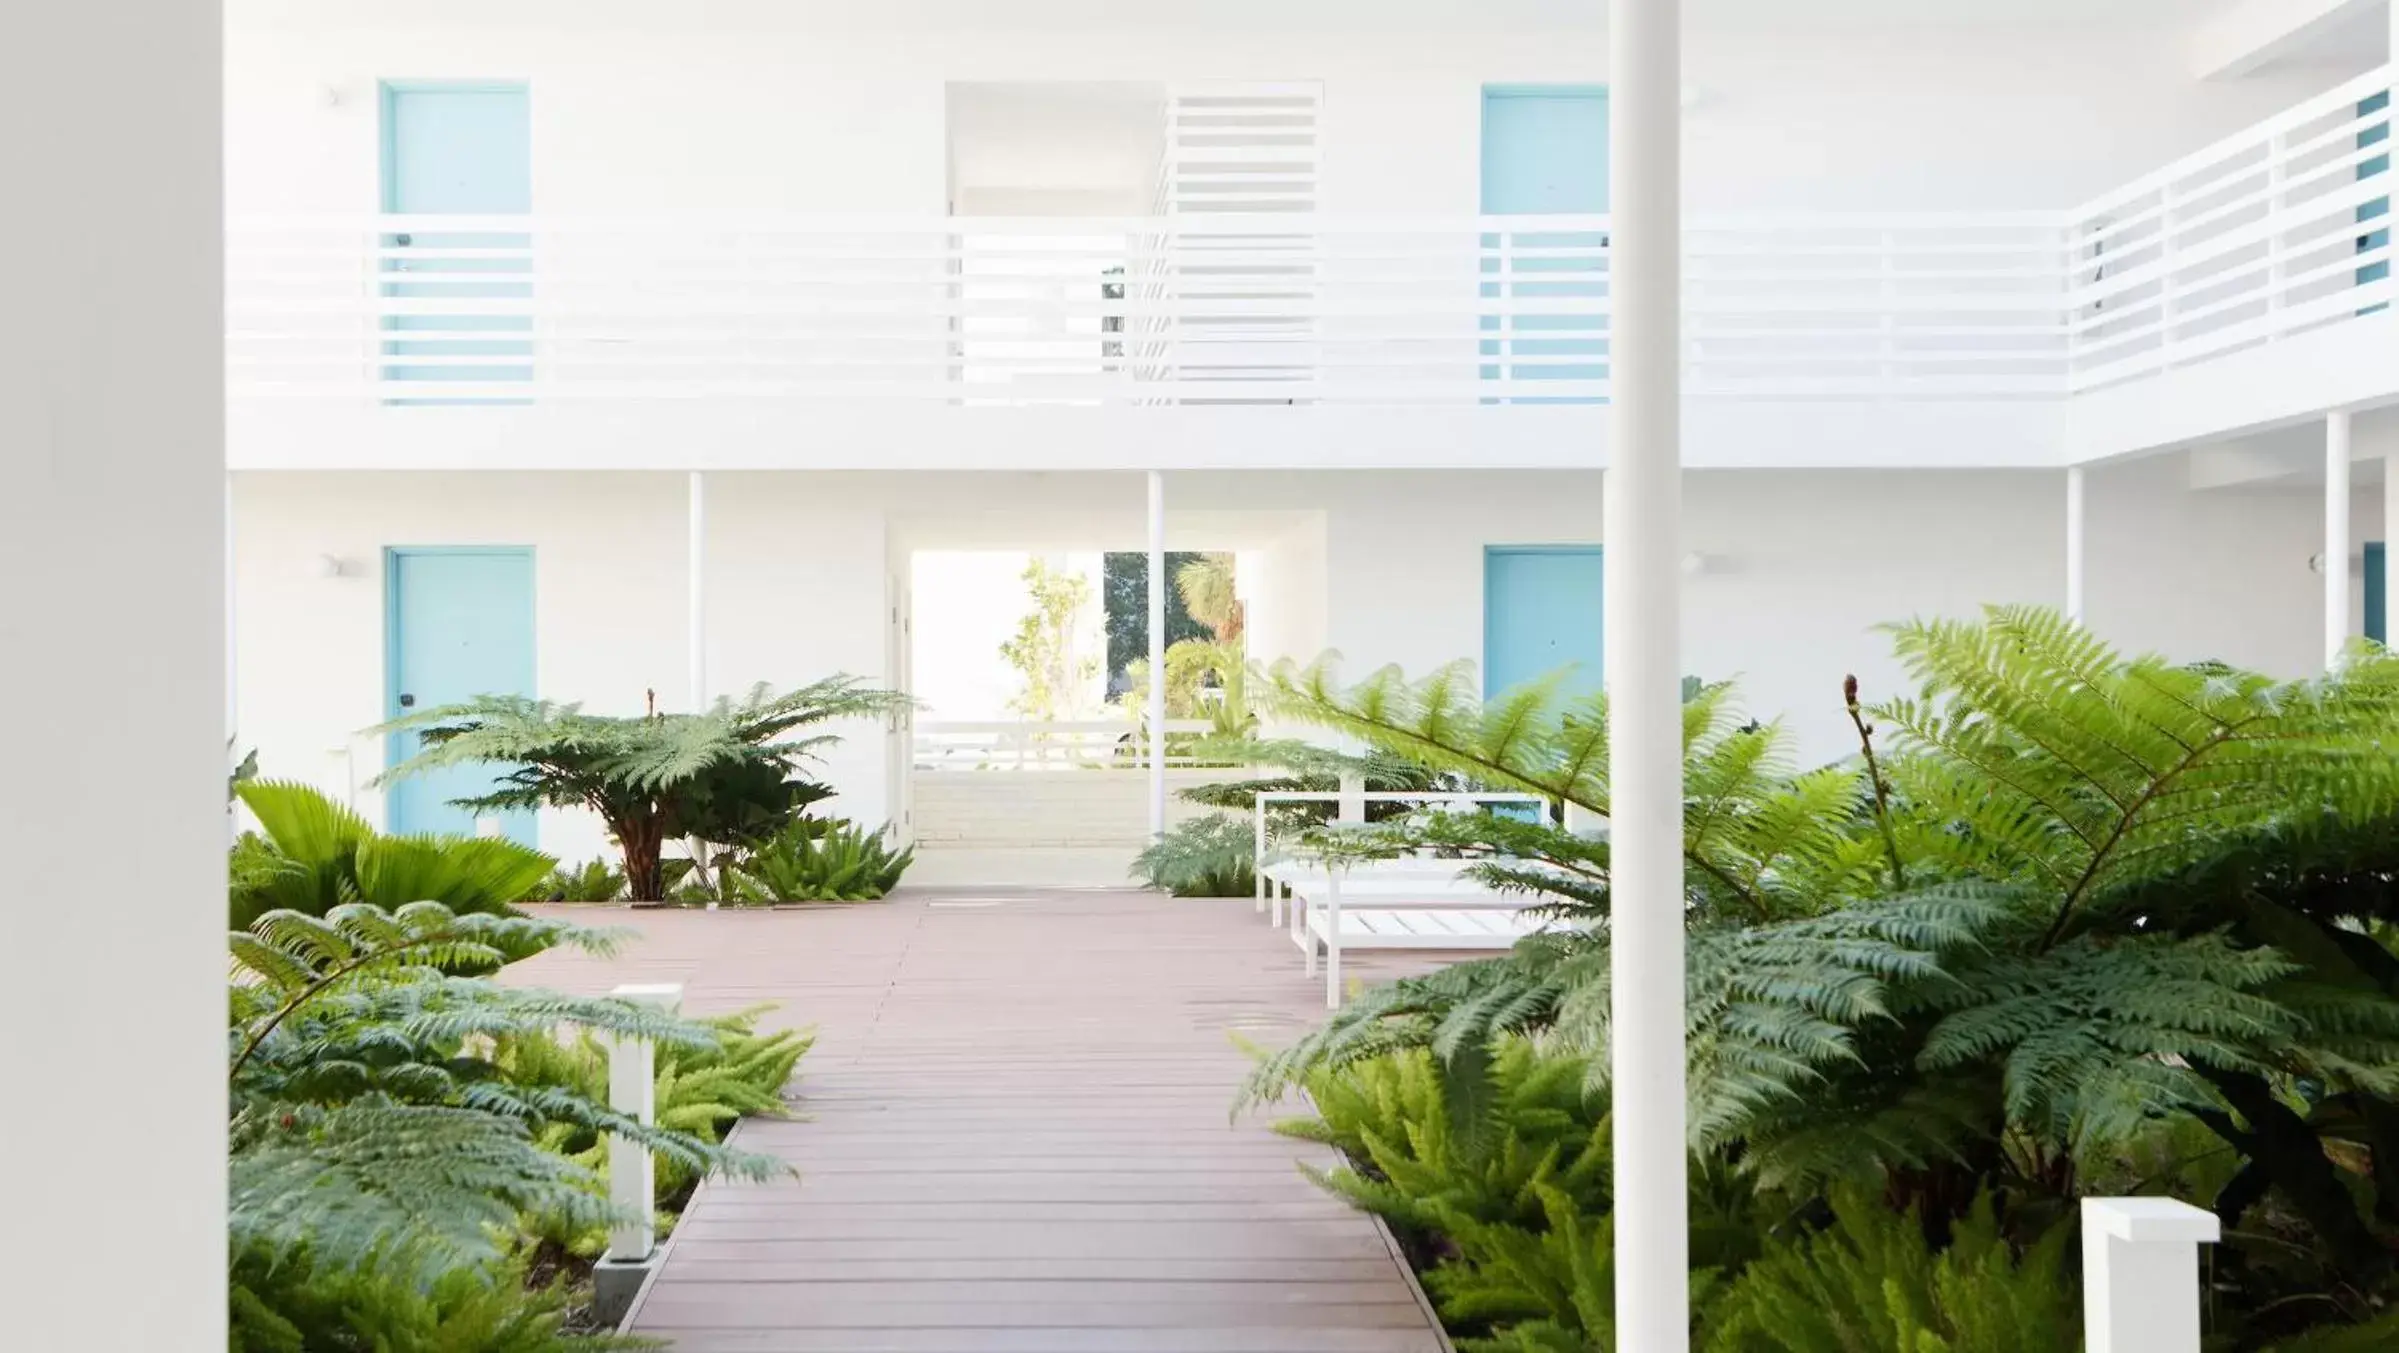 Property building in The Kimpton Shorebreak Fort Lauderdale Beach Resort